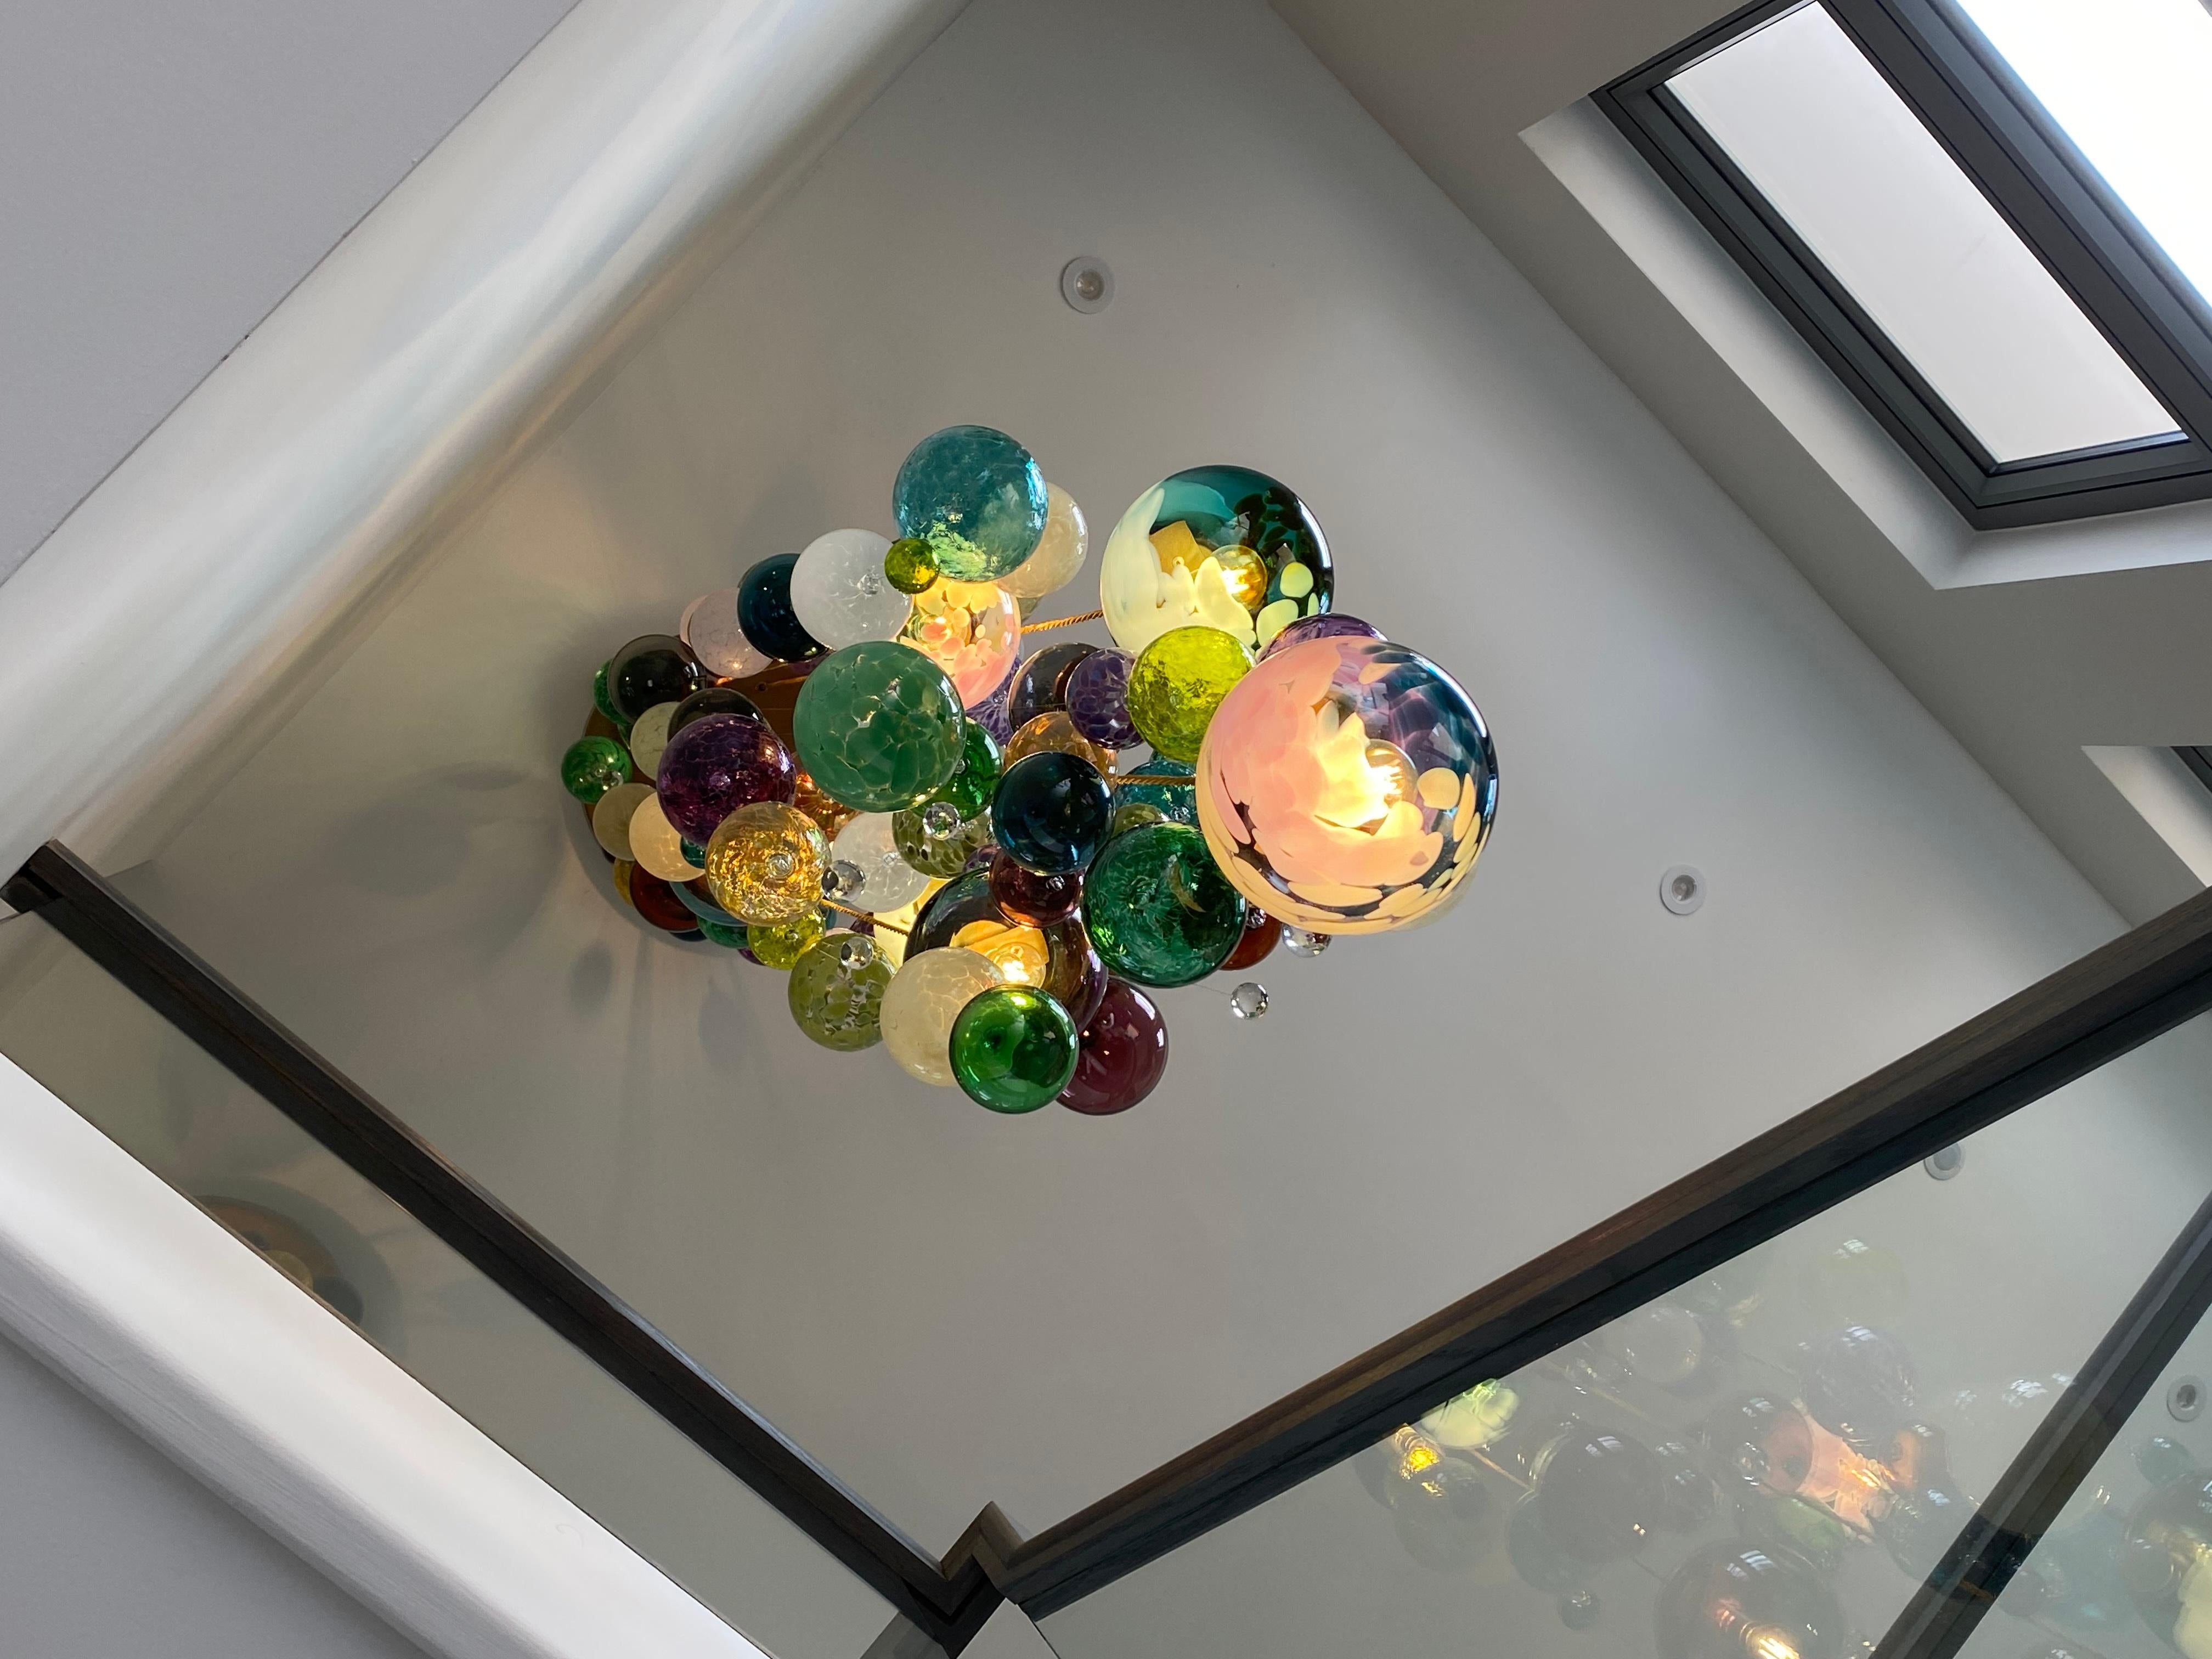 Dieser moderne Kronleuchter im Kaskaden-Design besteht aus einzeln geblasenen Glaskugeln. Das Glas wird in Europa und Großbritannien geblasen und der Kronleuchter wird in unserem Studio in Südlondon entworfen und handgefertigt. 

Dieser Kronleuchter